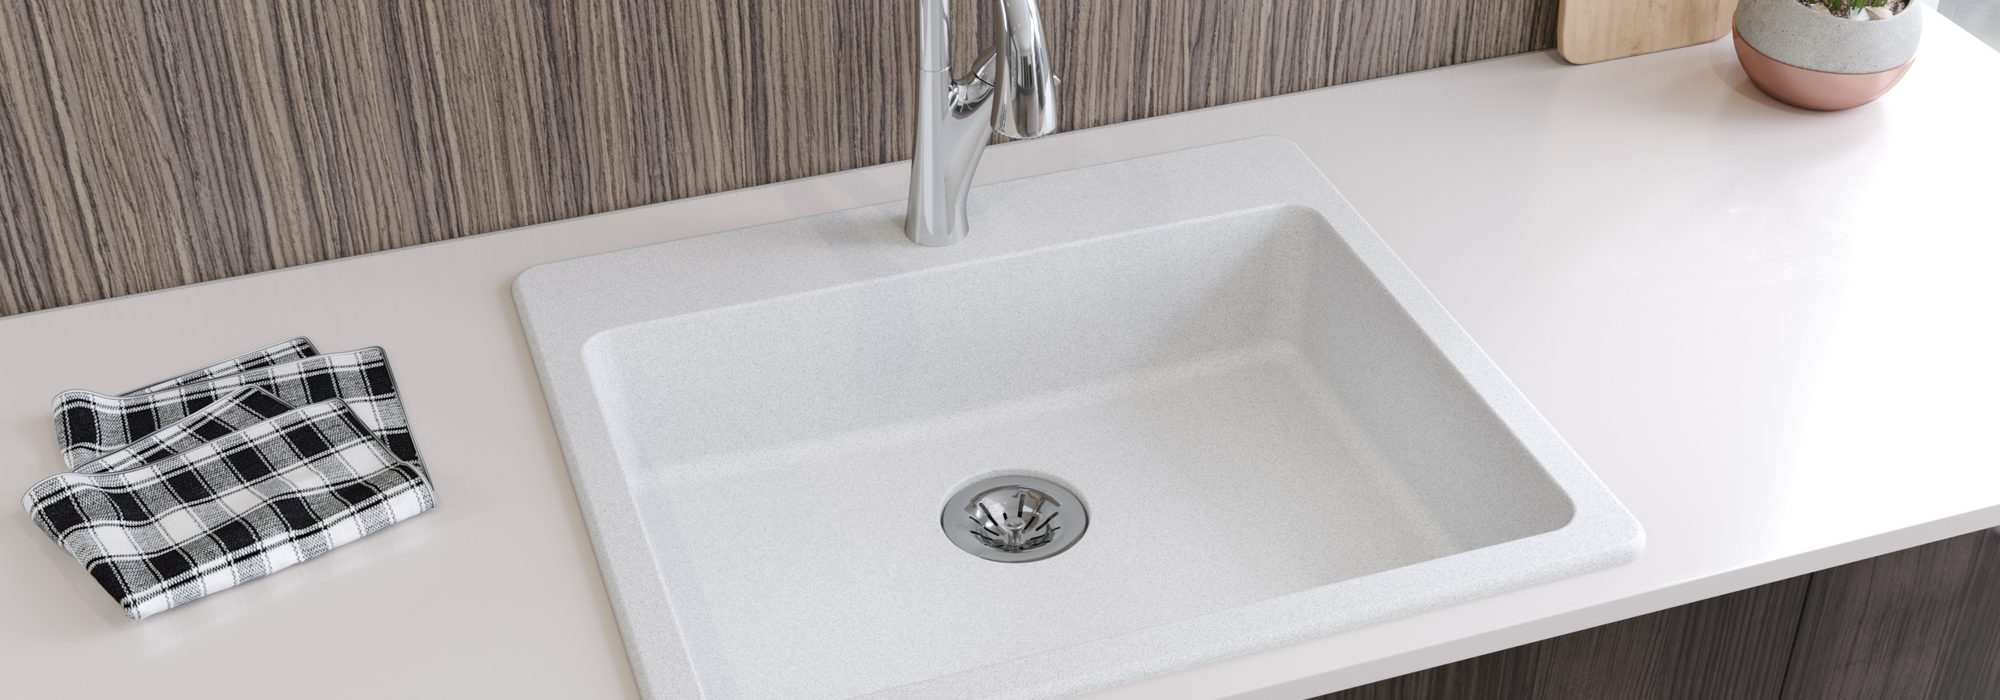 Elkay Quartz Classic 25in x 22in x 5-1/2in Drop-in ADA Sink with Perfect Drain White